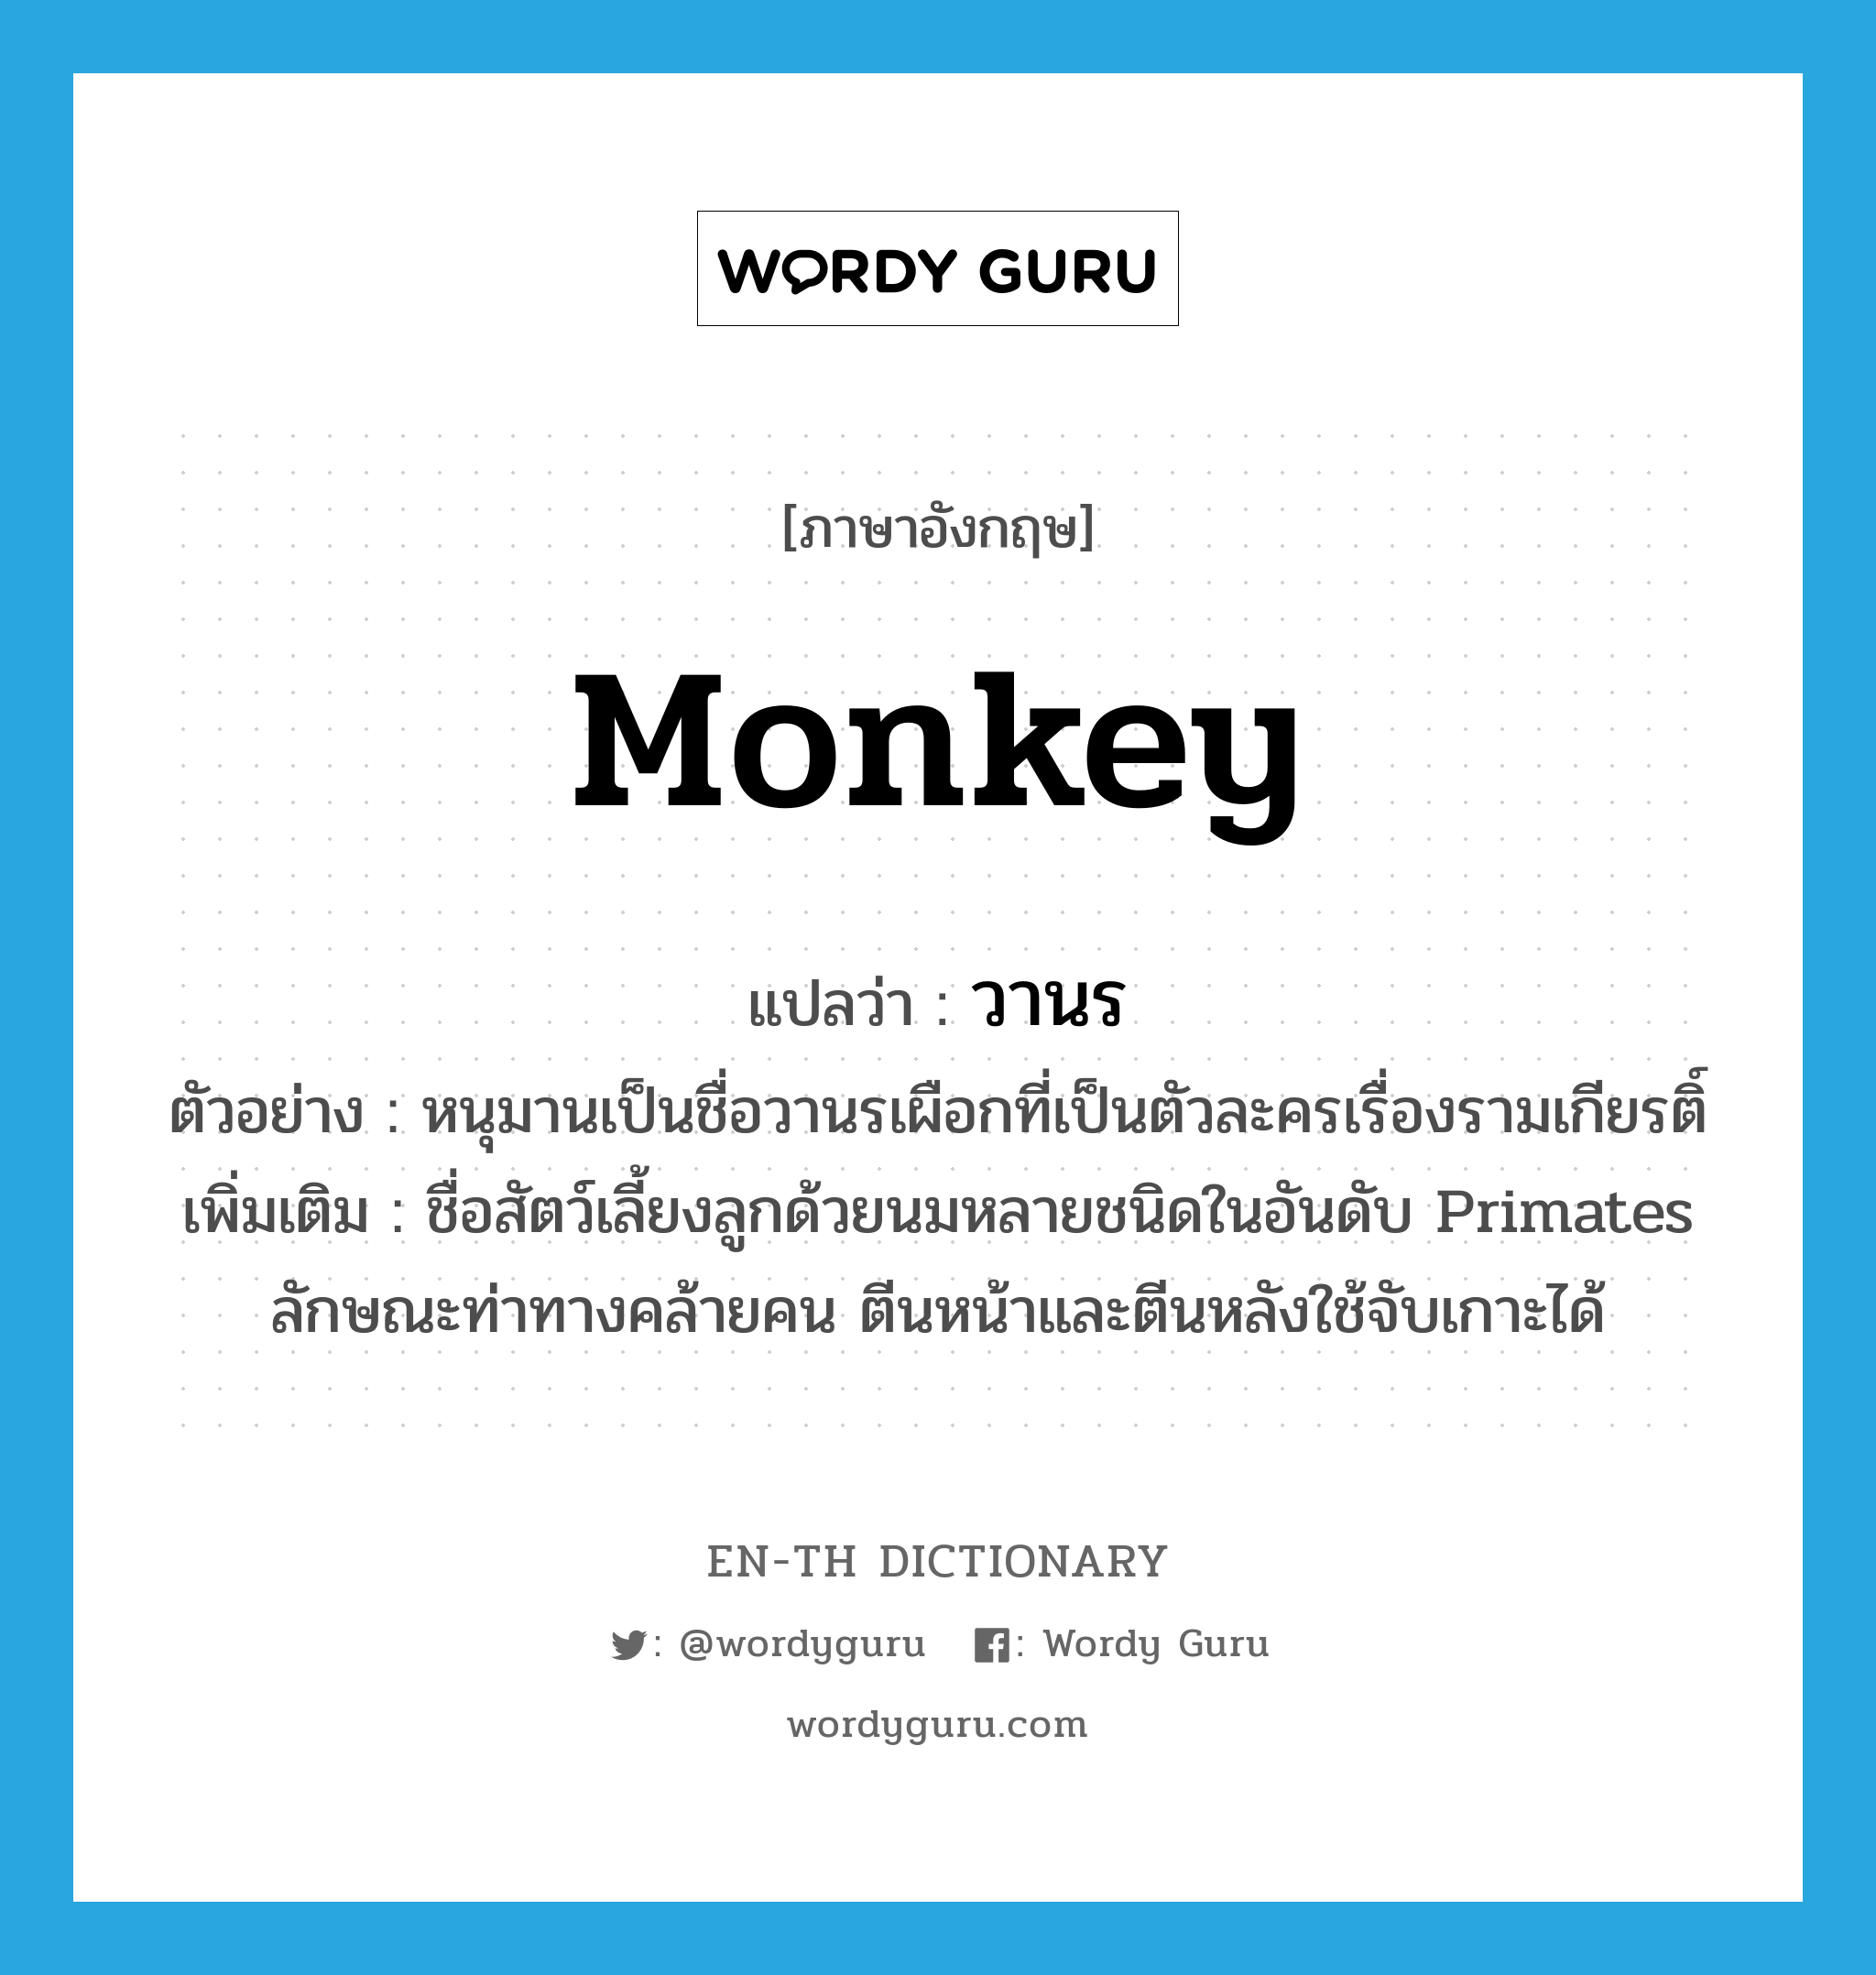 วานร ภาษาอังกฤษ?, คำศัพท์ภาษาอังกฤษ วานร แปลว่า monkey ประเภท N ตัวอย่าง หนุมานเป็นชื่อวานรเผือกที่เป็นตัวละครเรื่องรามเกียรติ์ เพิ่มเติม ชื่อสัตว์เลี้ยงลูกด้วยนมหลายชนิดในอันดับ Primates ลักษณะท่าทางคล้ายคน ตีนหน้าและตีนหลังใช้จับเกาะได้ หมวด N